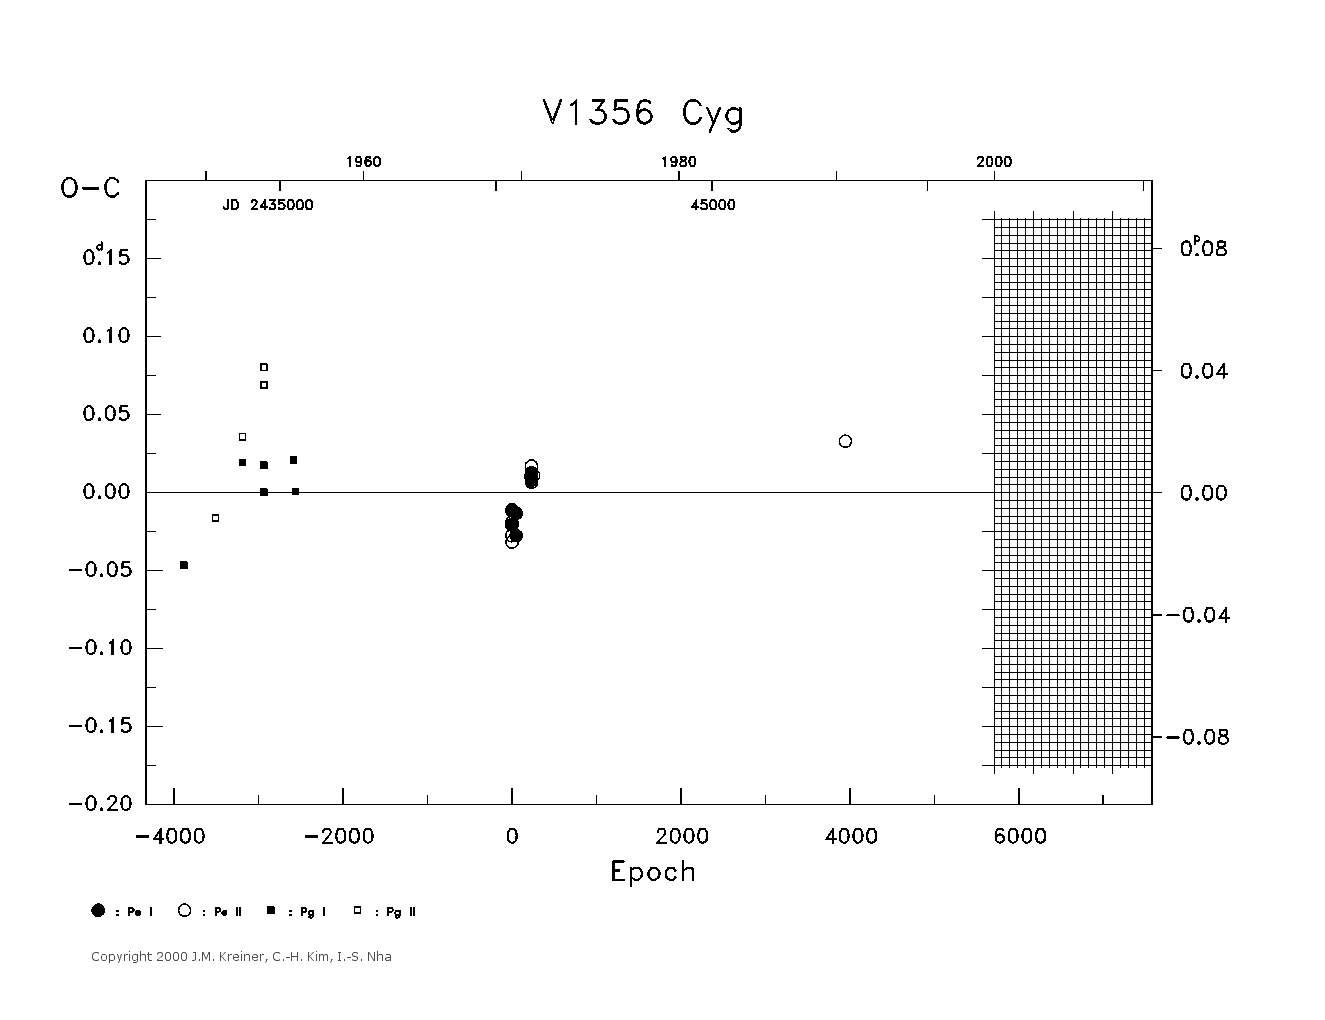 [IMAGE: large V1356 CYG O-C diagram]